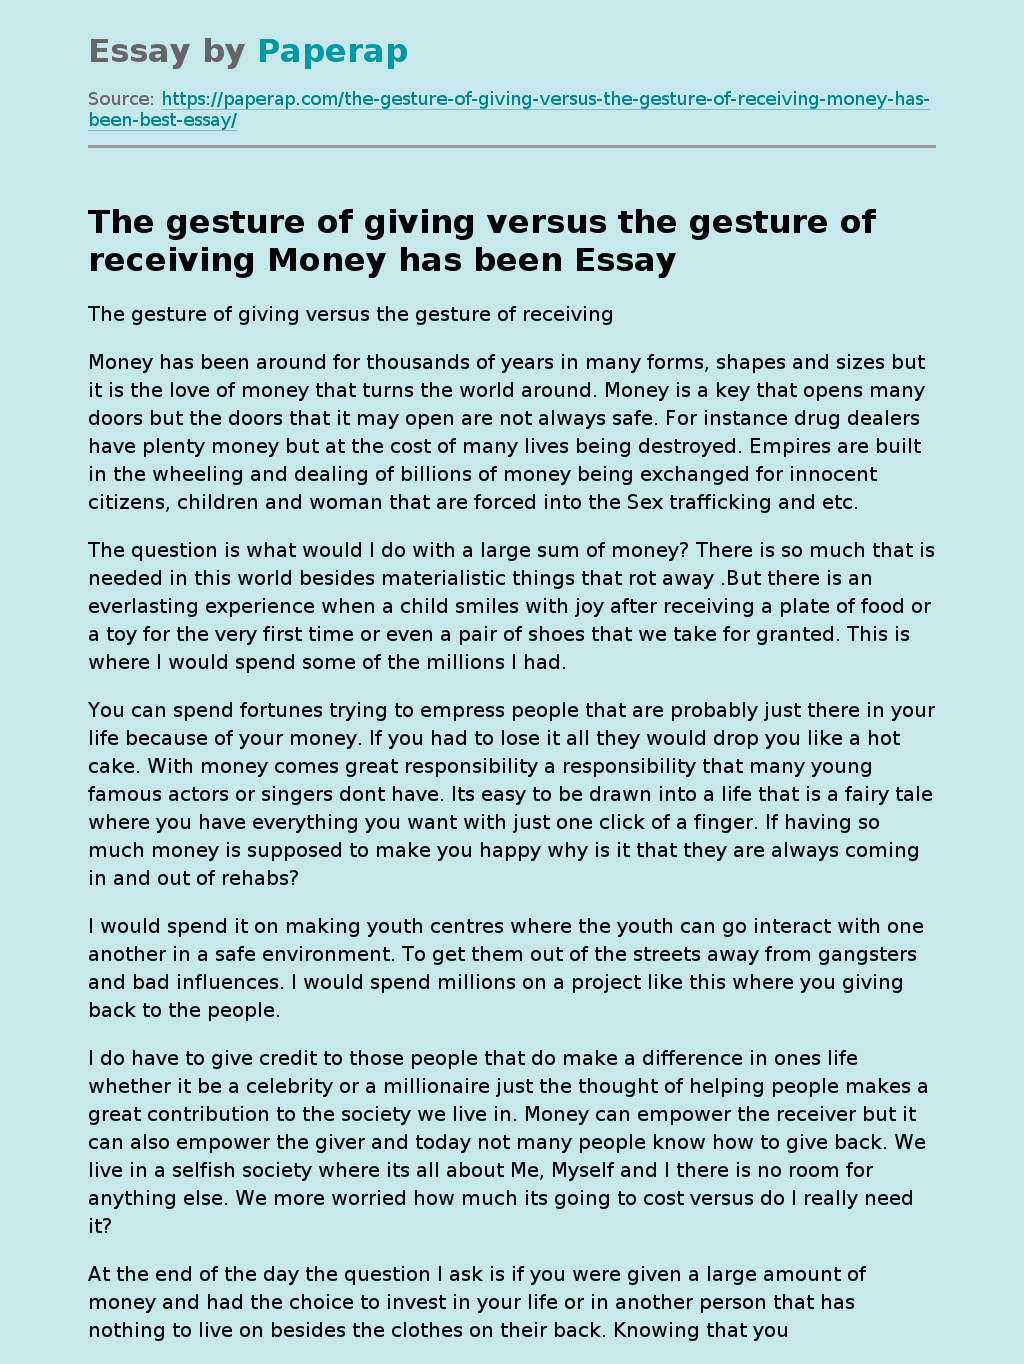 The gesture of giving versus the gesture of receiving Money has been